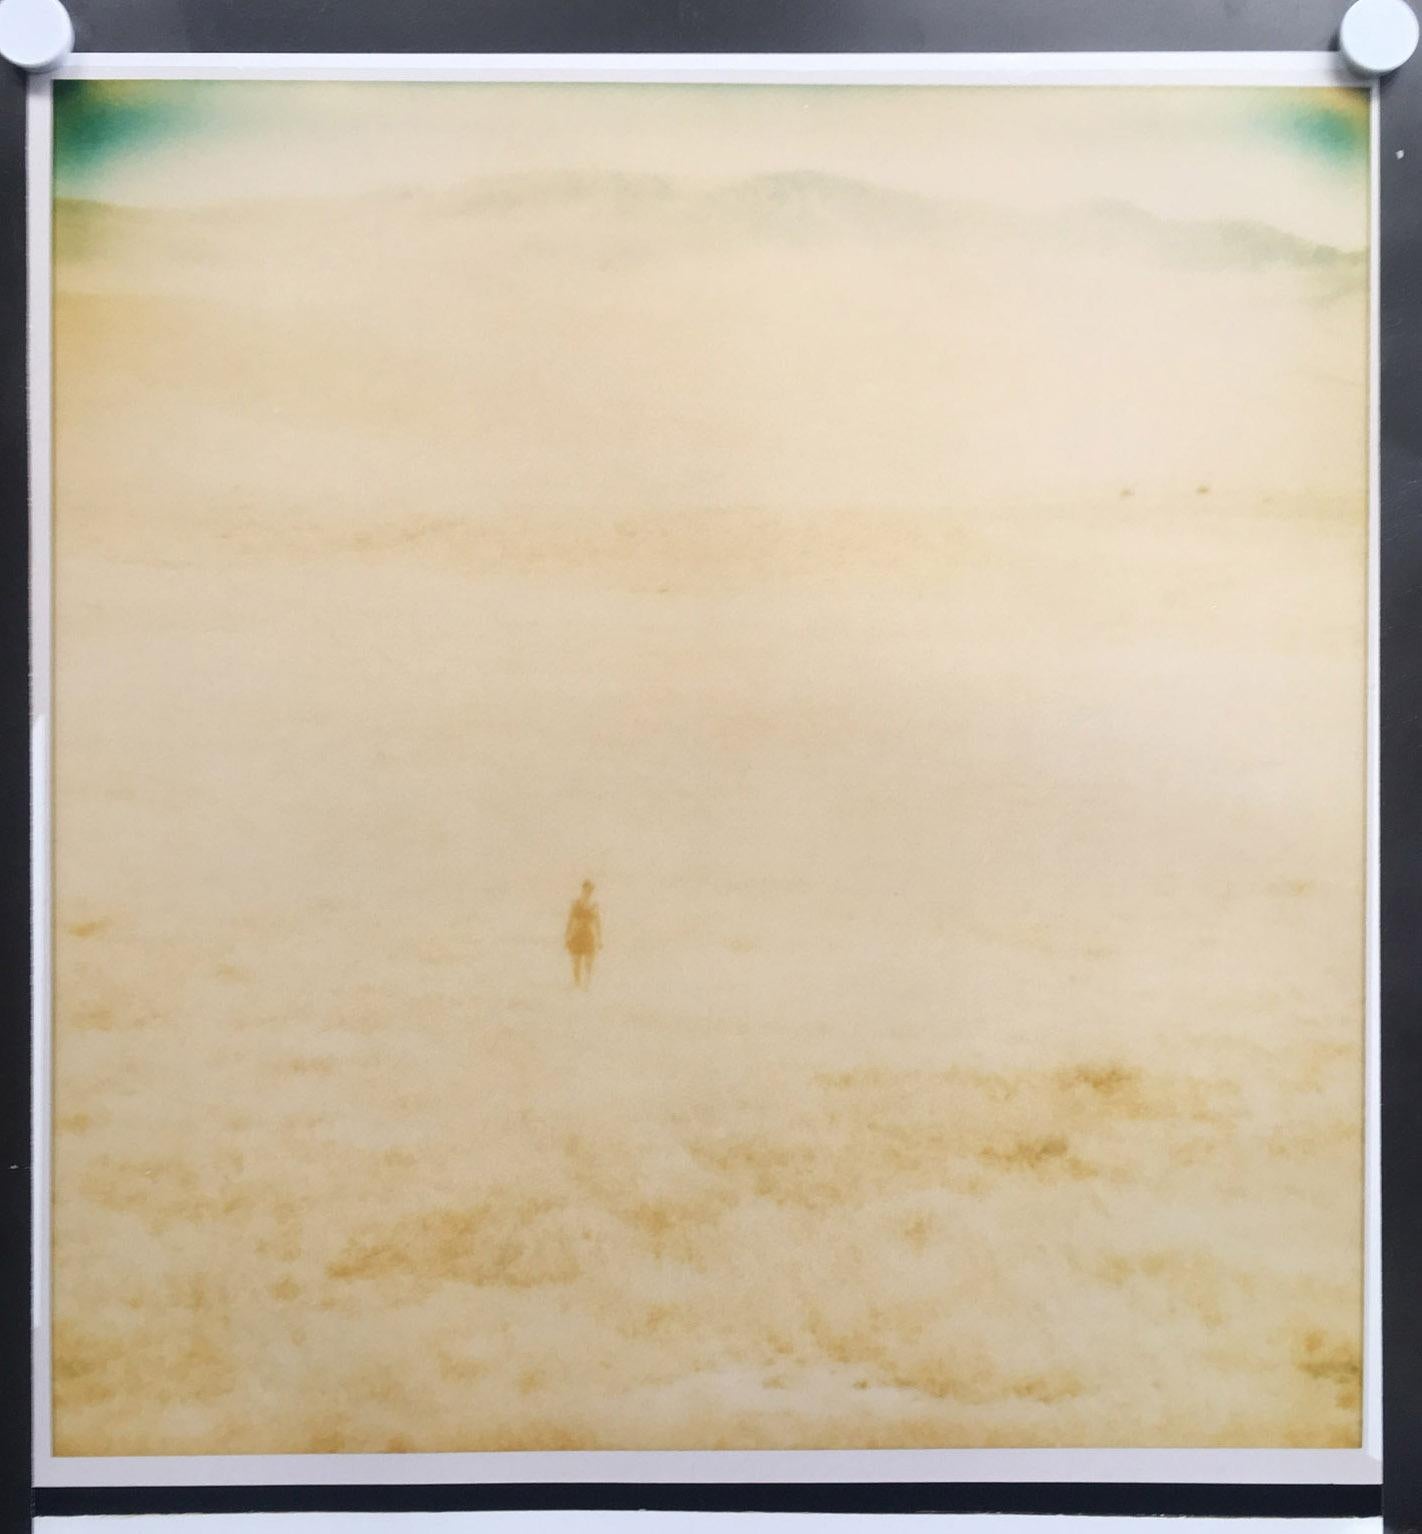 Untitled (Oilfields) - Contemporary, 21st Century, Desert, Polaroid, Landscape  - Photograph by Stefanie Schneider